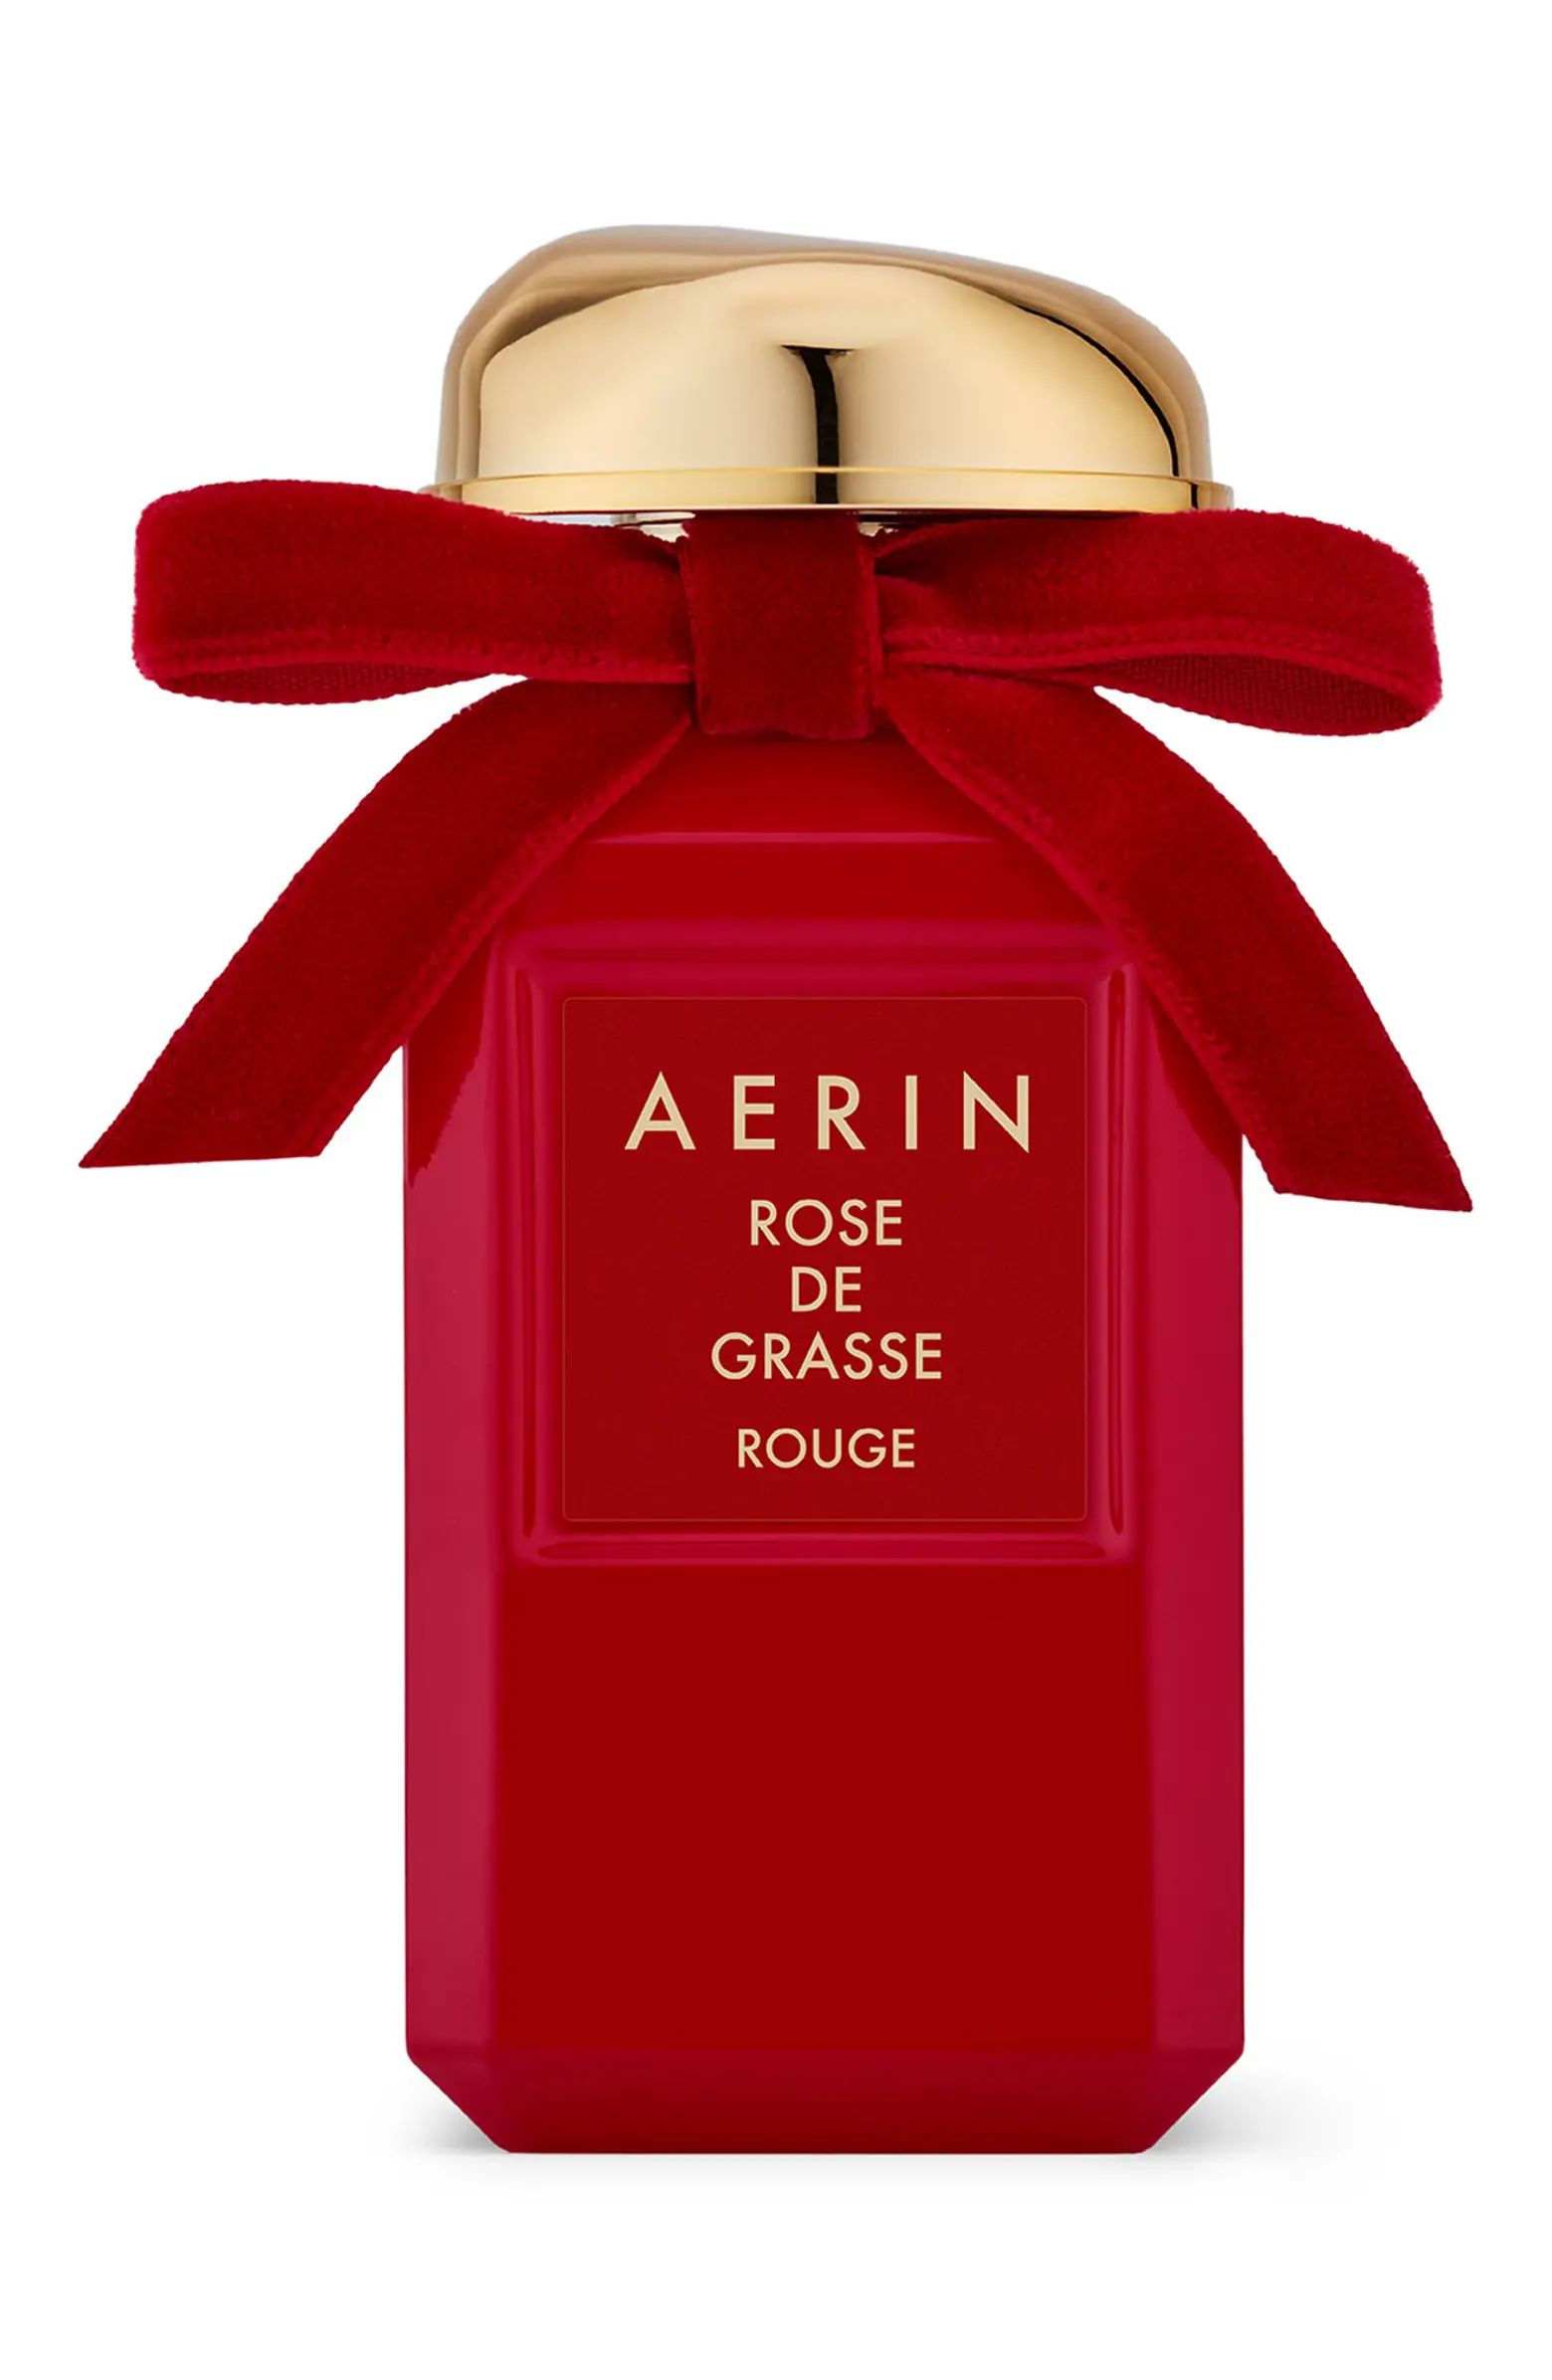 AERIN Beauty Rose de Grasse Rouge Eau de Parfum | Nordstrom